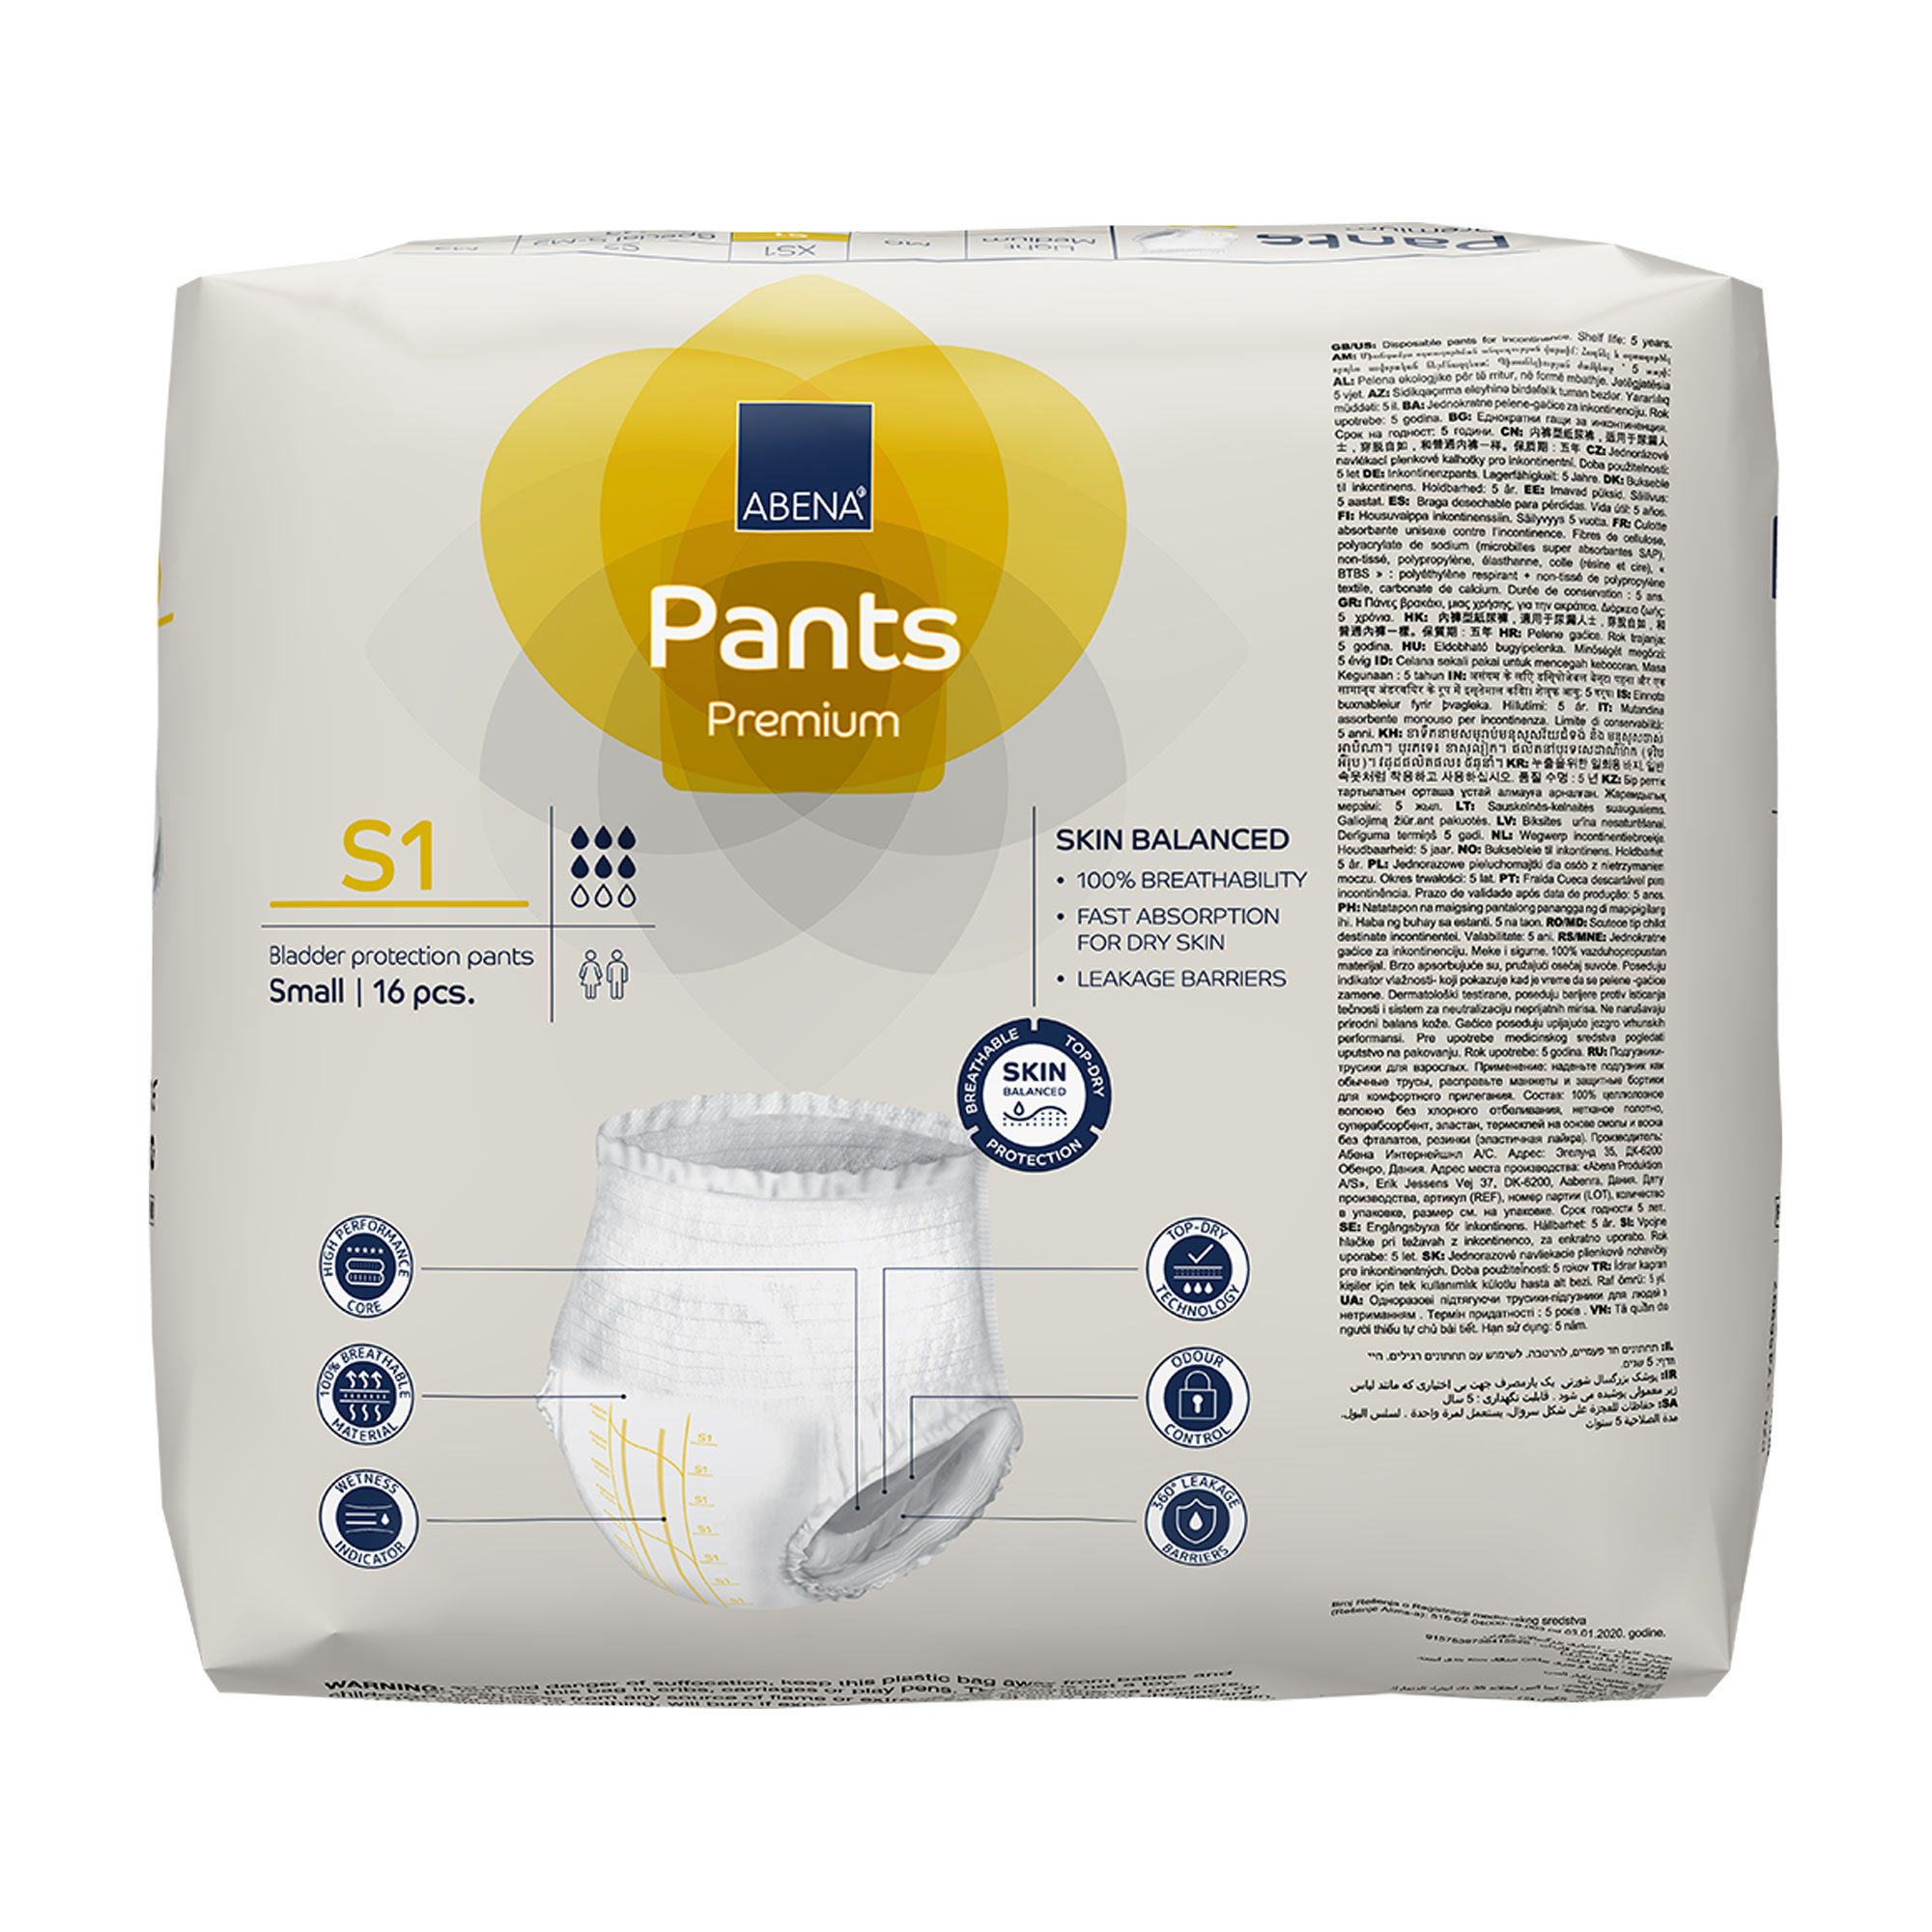 Abena Pants S1 Premium Rückseite